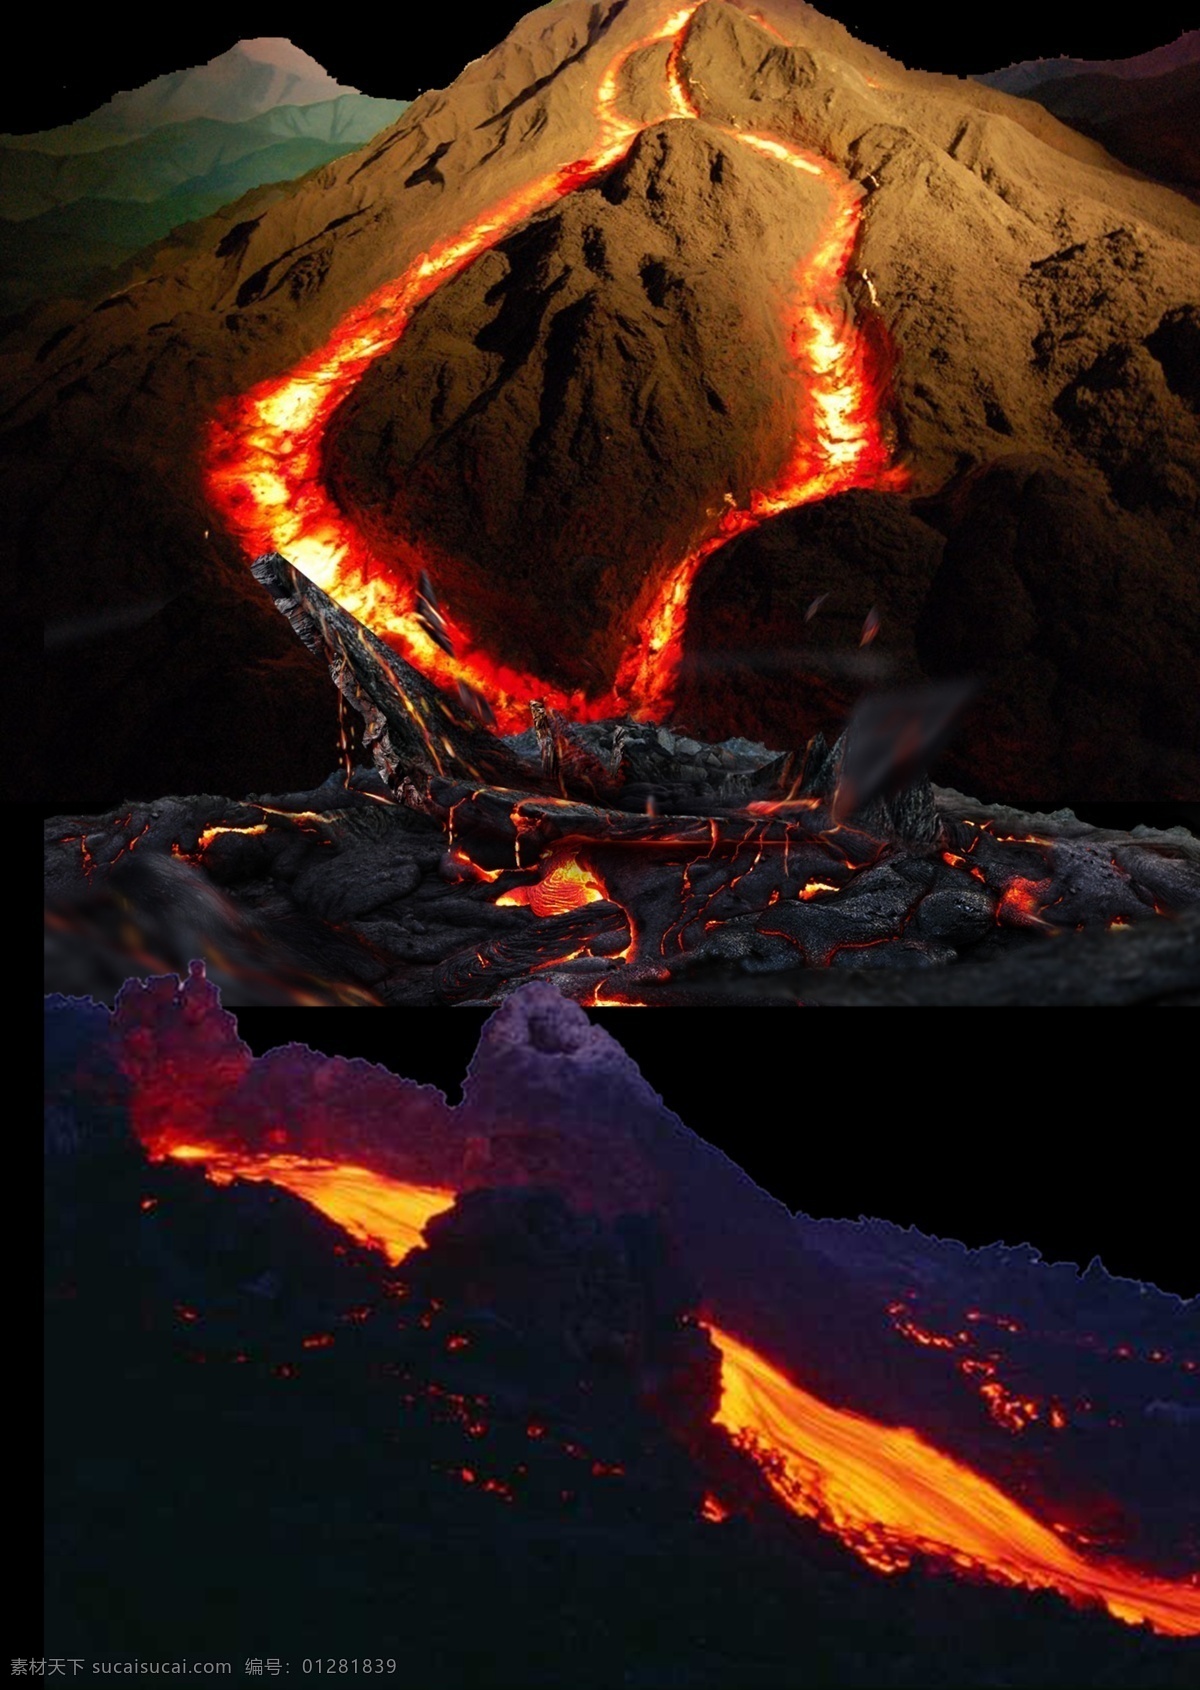 火山 岩浆 分层 火 火焰 背景 黑色 晚上 大伙 柴火 燃烧 炭火 烤火 火焰素材 火素材 篝火素材 自然景观 自然风光